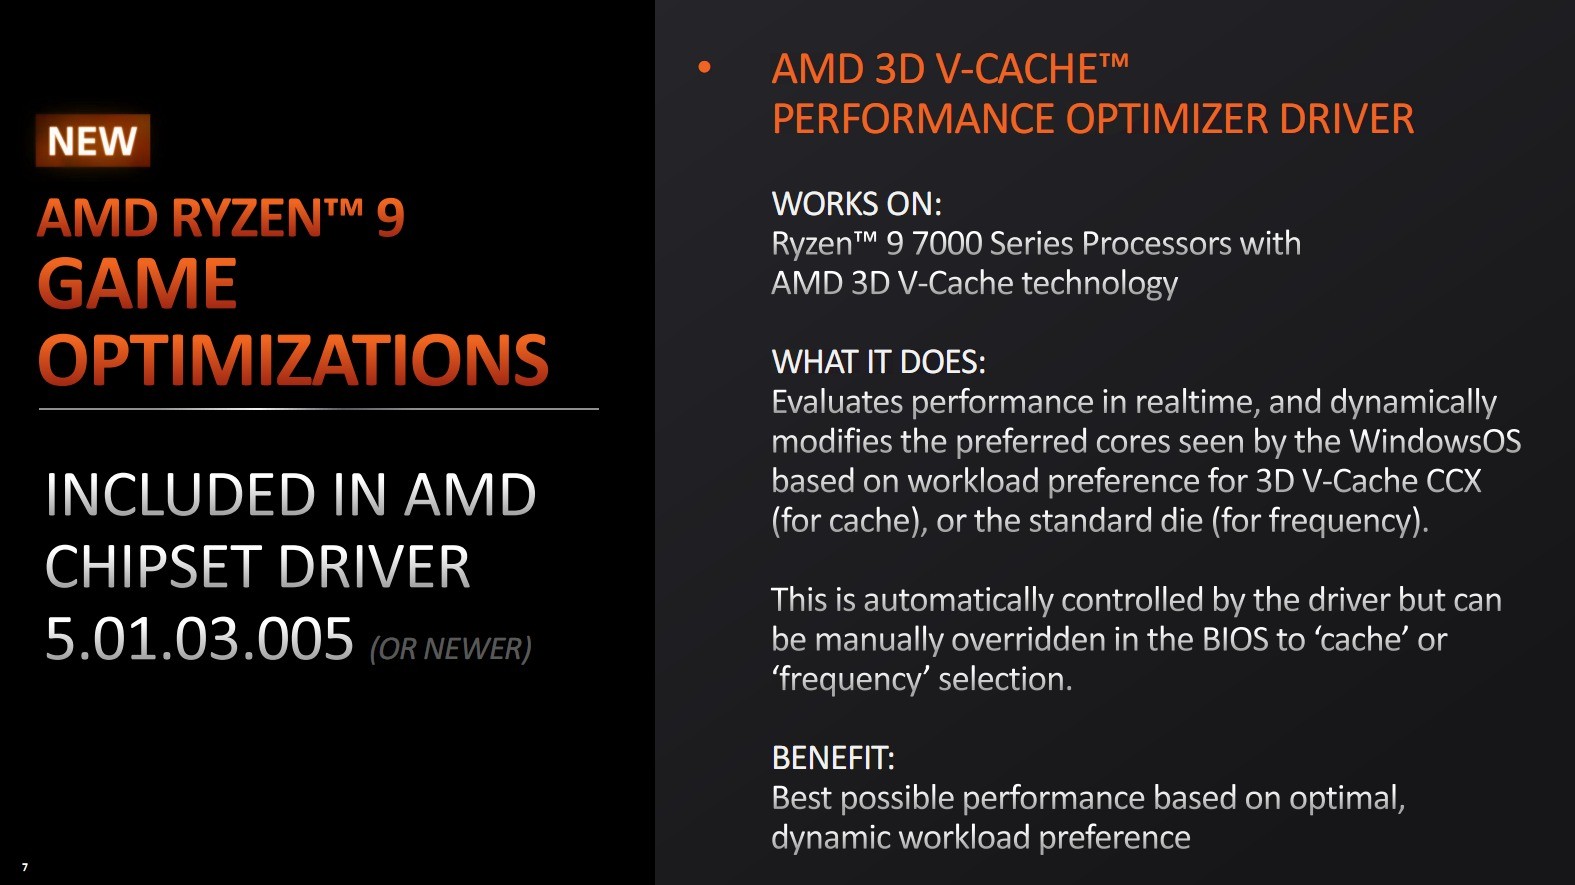 AMD 7000X3Dʽǳ144MB Ż